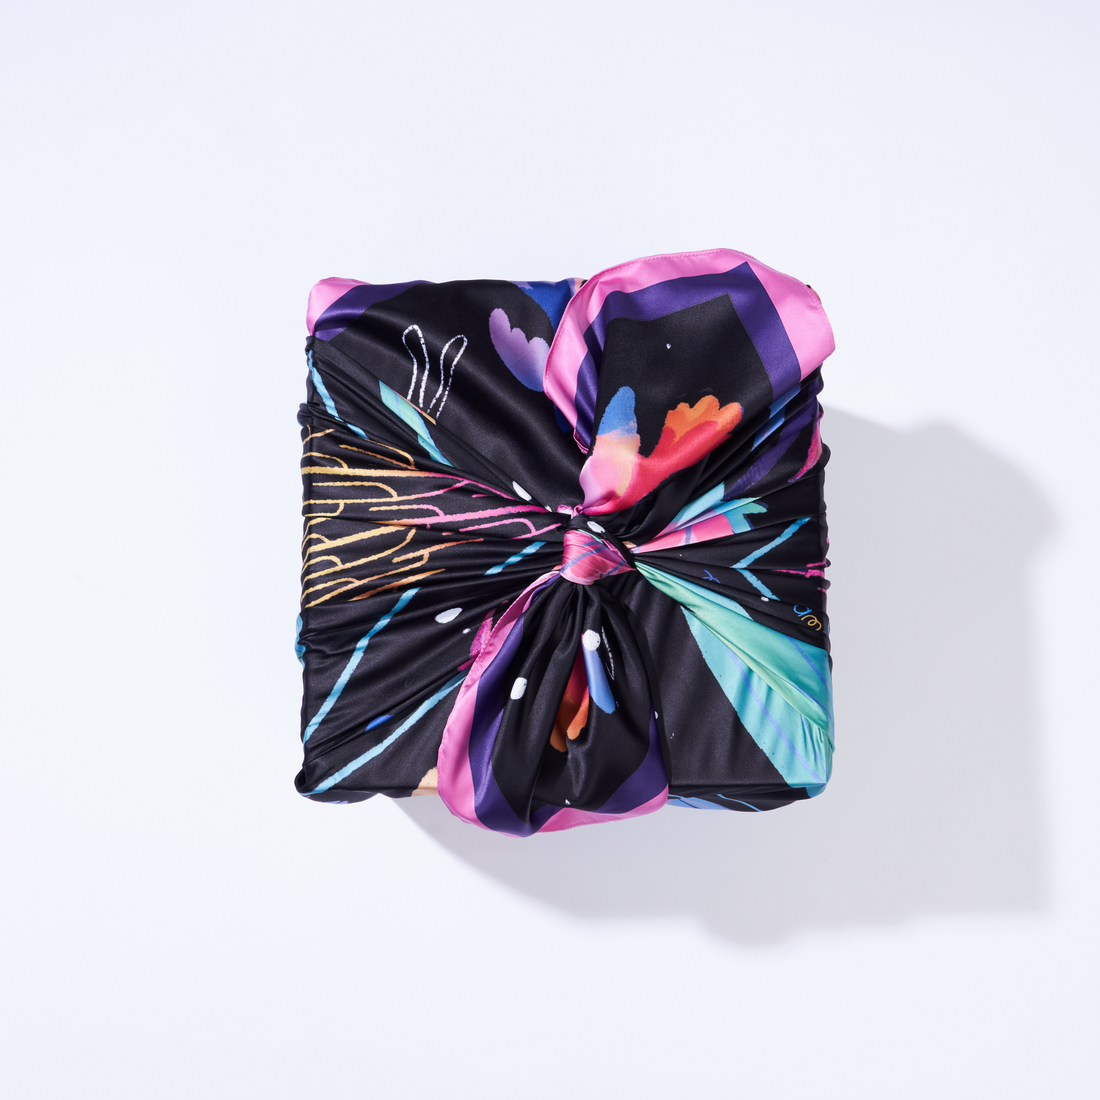 Cycle | 50" Furoshiki Gift Wrap by Nina Ramos